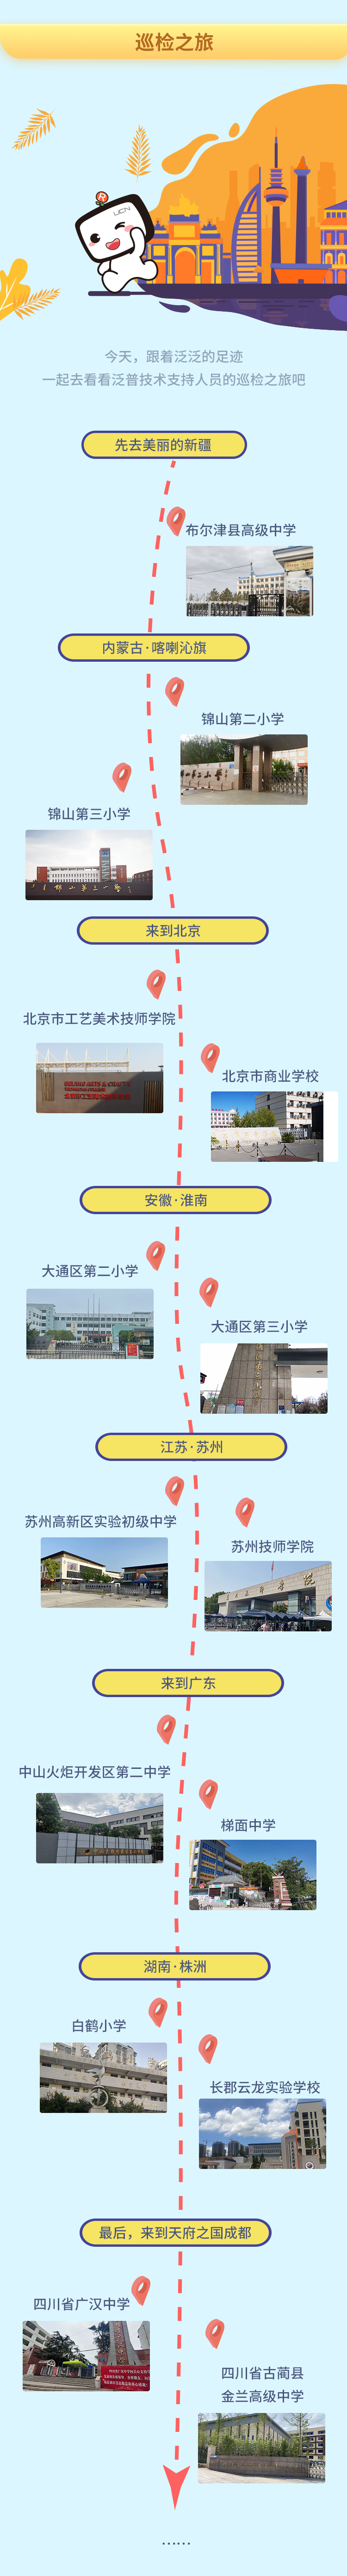 酷游ku游官网最新地址
例行巡检，主动到校服务，保障新学期顺畅教学(图2)